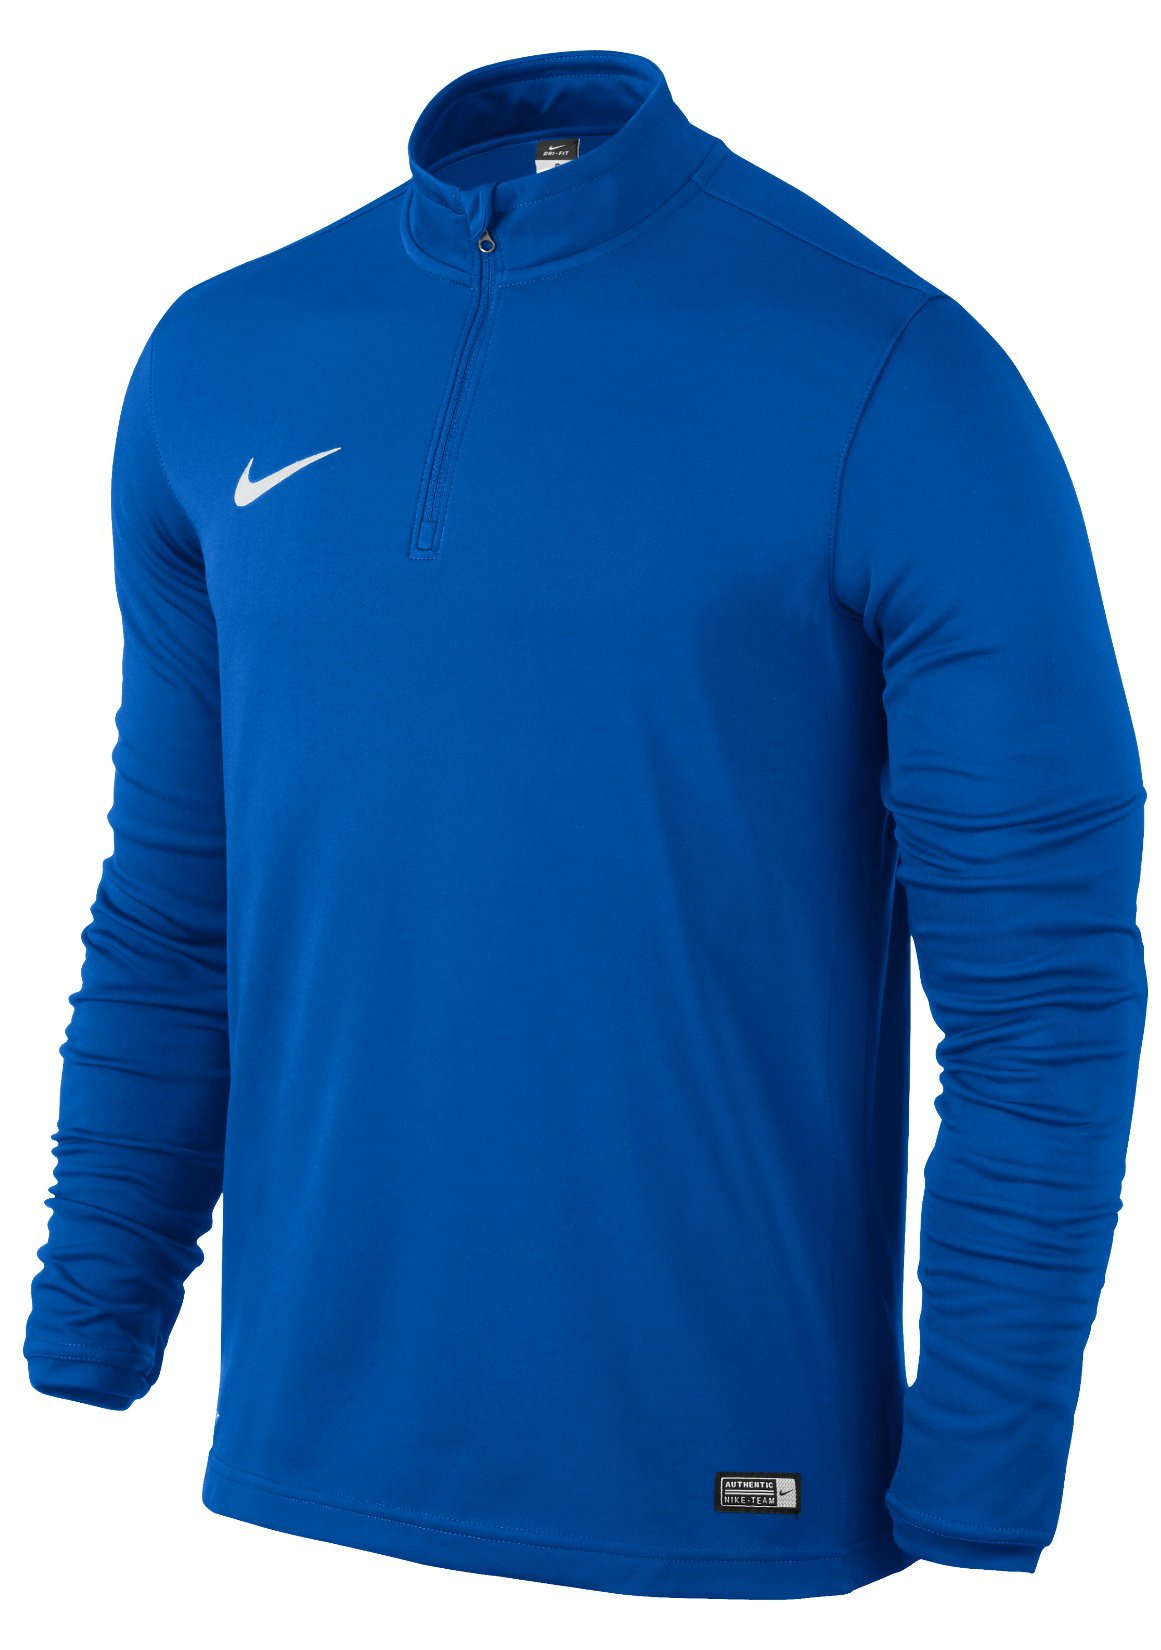 Pánské fotbalové triko Nike Academy16 Midlayer Top.